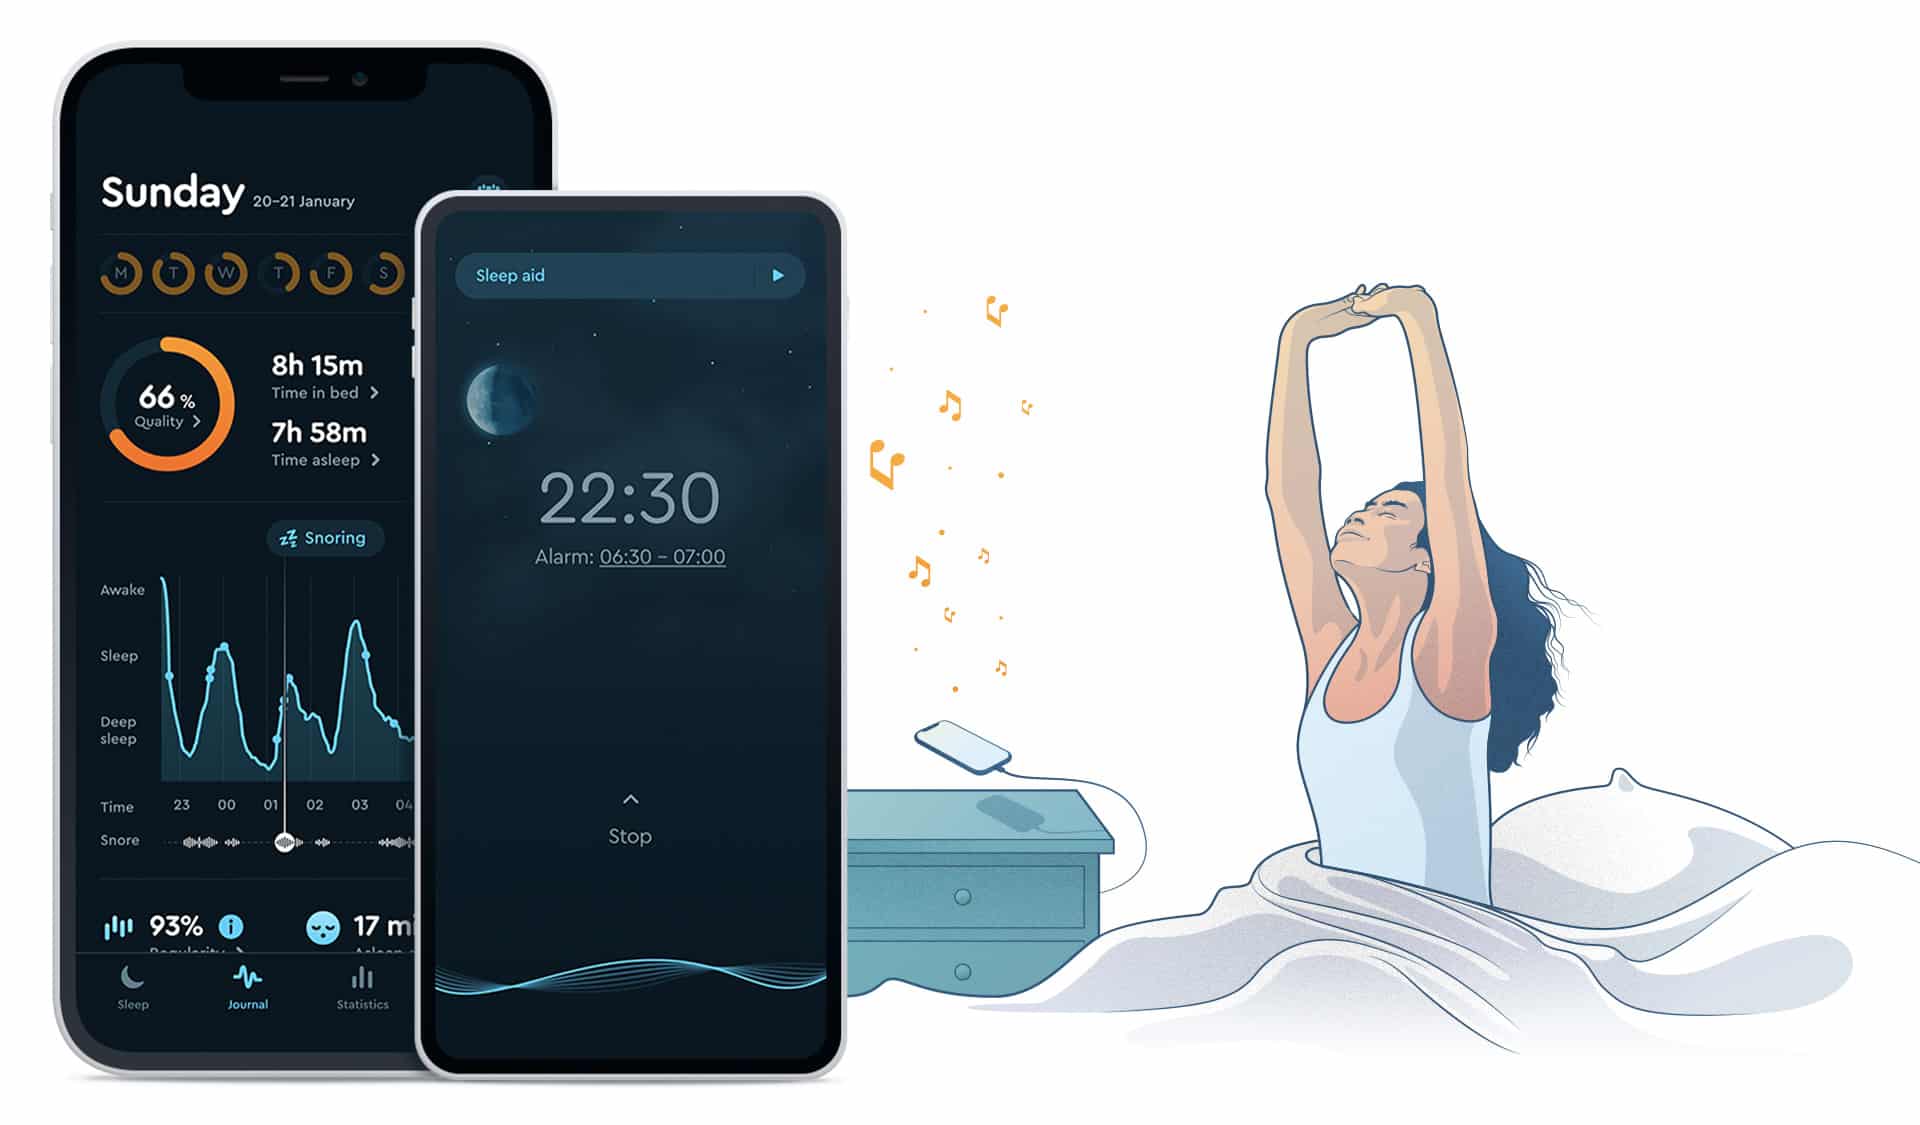 Sleep app – Learn how to improve your sleep